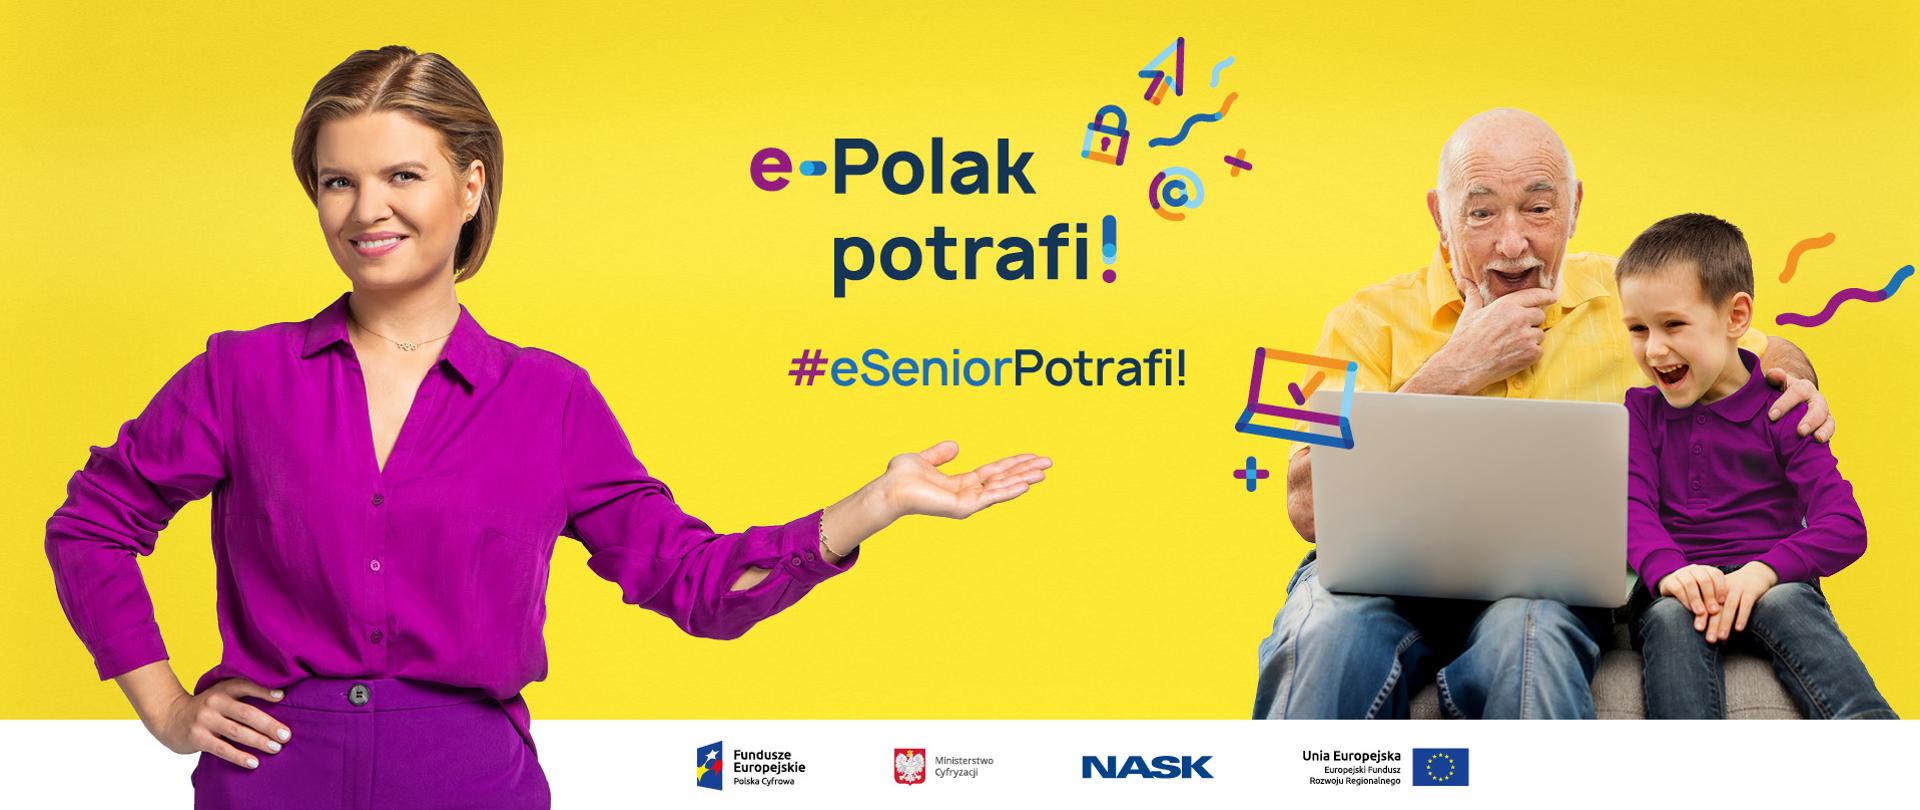 Zdjęcie na żółtym tle - z prawej strony ubrana na fioletowo Marta Manowska. Jedną rękę (prawą) ma opartą na biodrze, Drugą wskazują w bok. Z prawej strony uśmiechnięci dziadek z wnuczkiem oglądający coś na laptopie. Na środku napis: e-Polak potrafi! #eSeniorpotrafi!